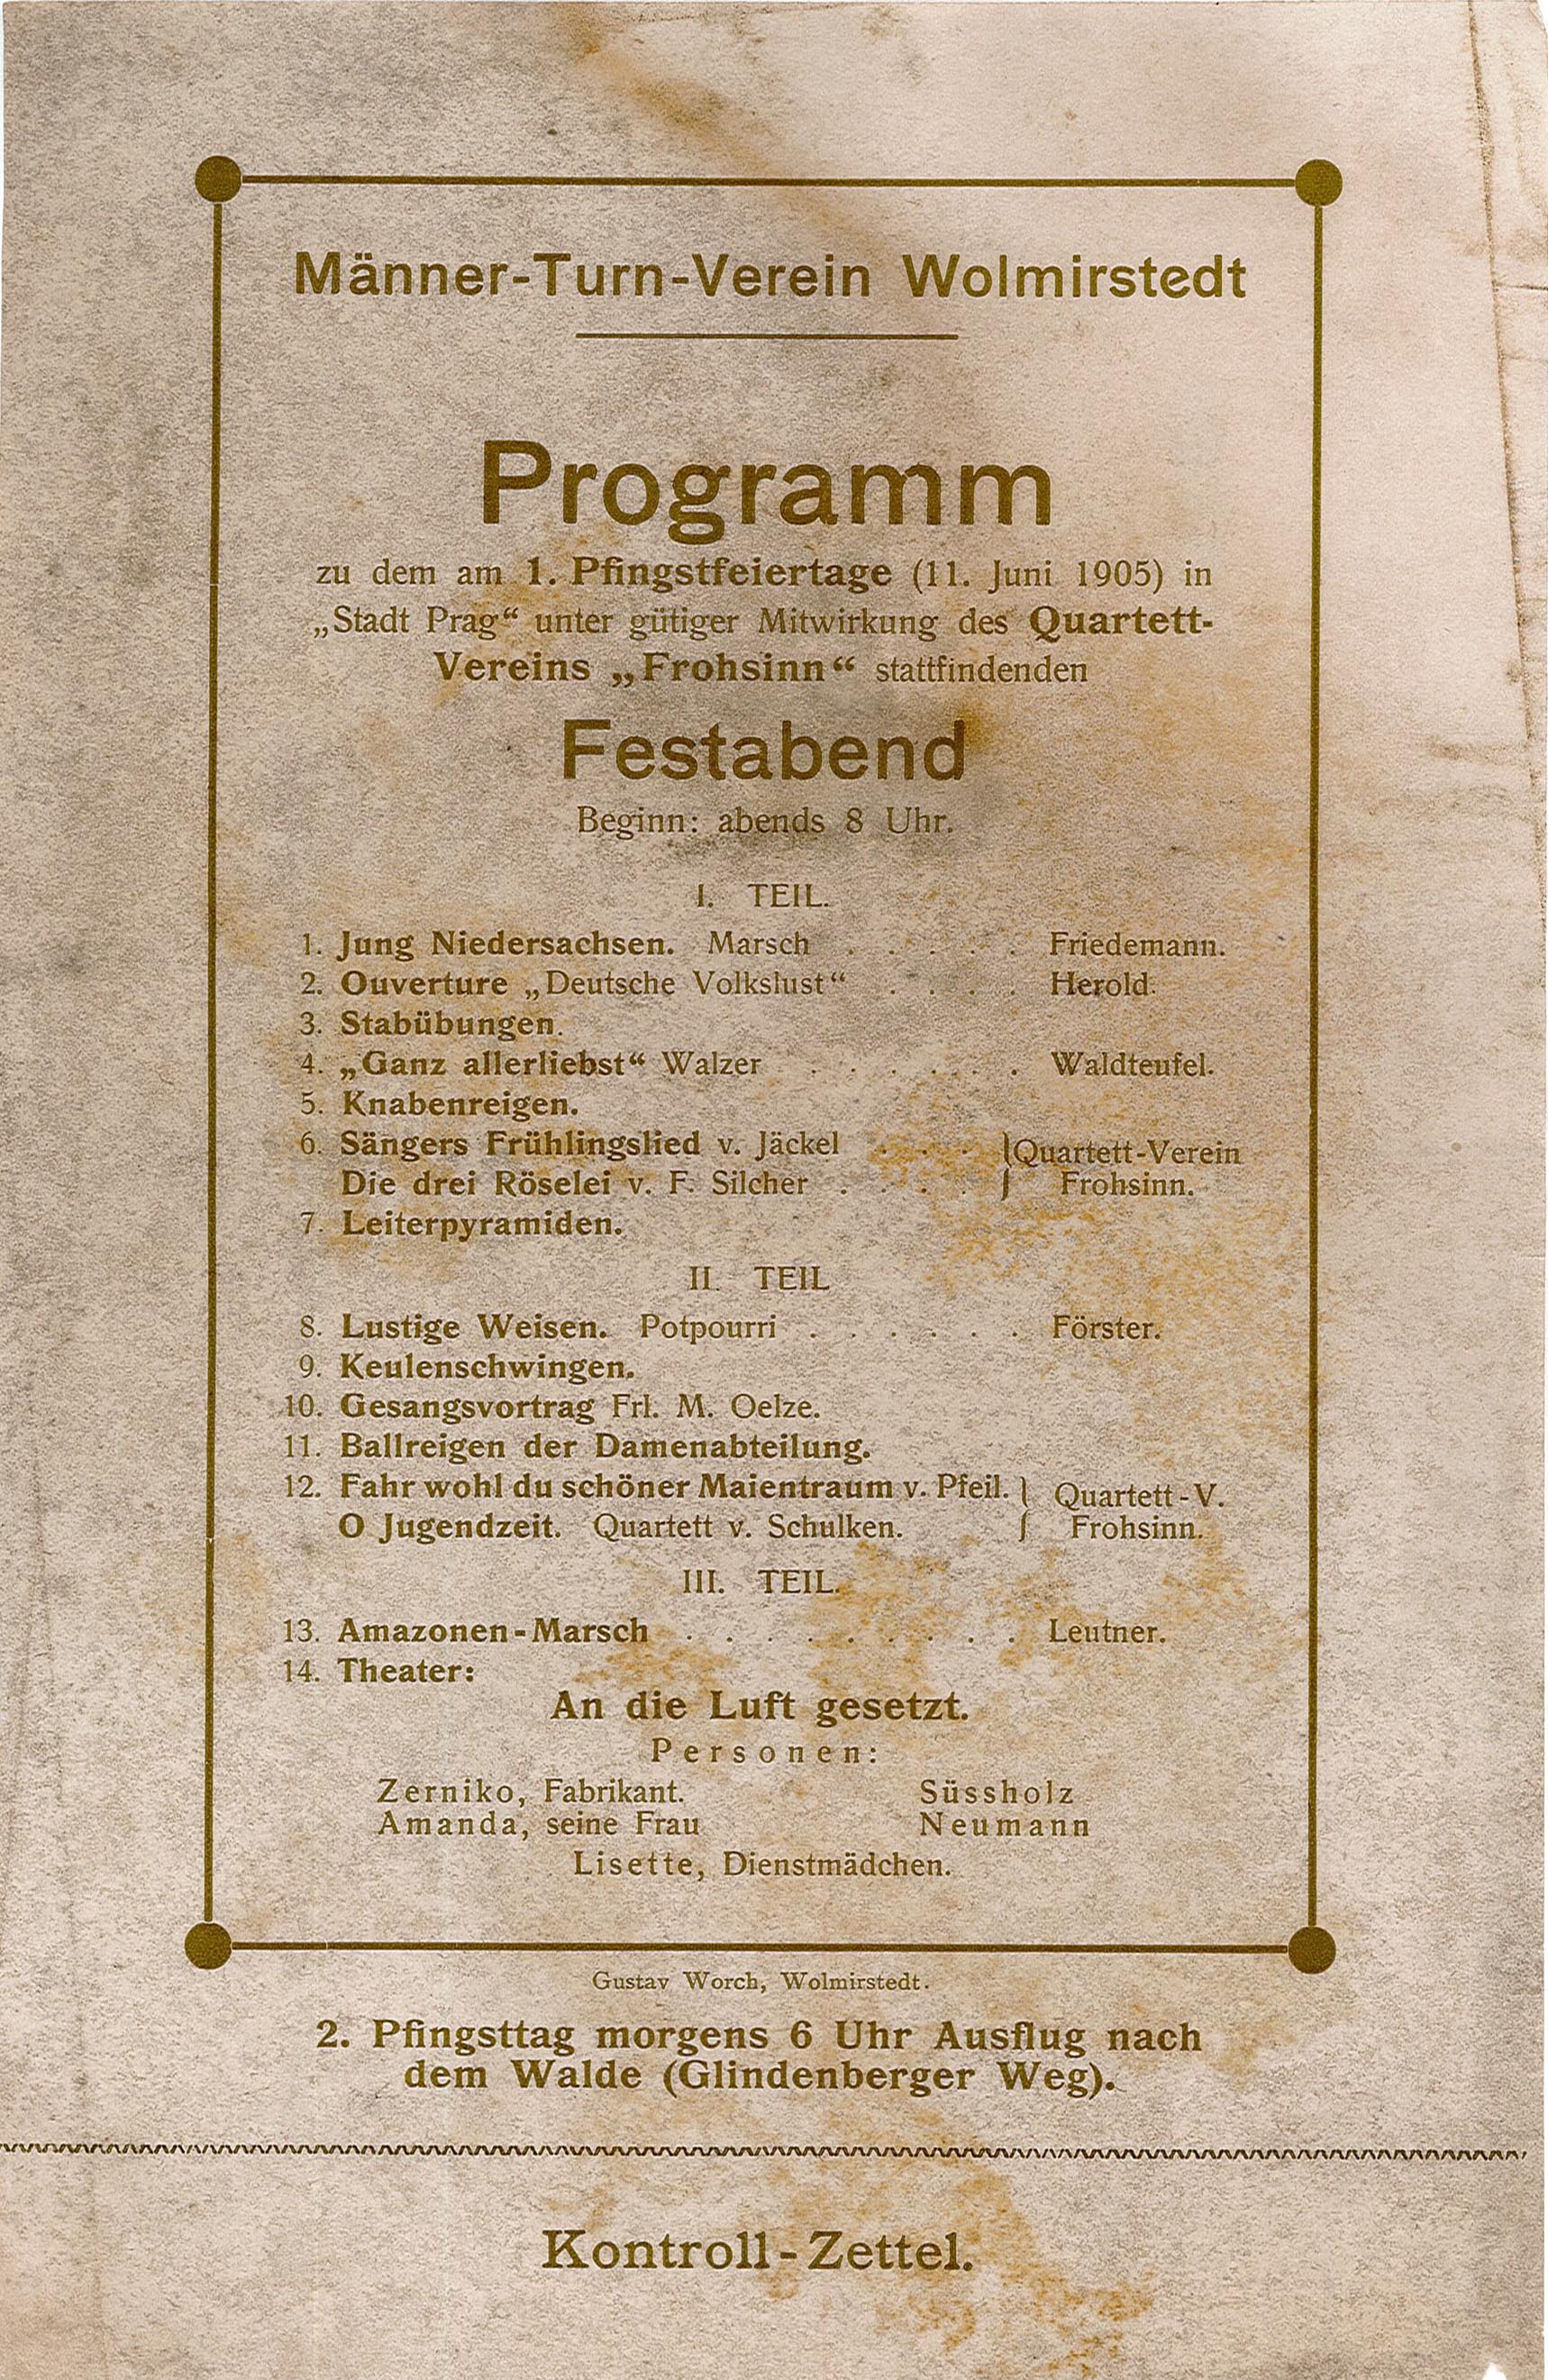 Programm des Männer-Turn-Vereins Wolmirstedt zu Pfingsten (Museum Wolmirstedt RR-F)